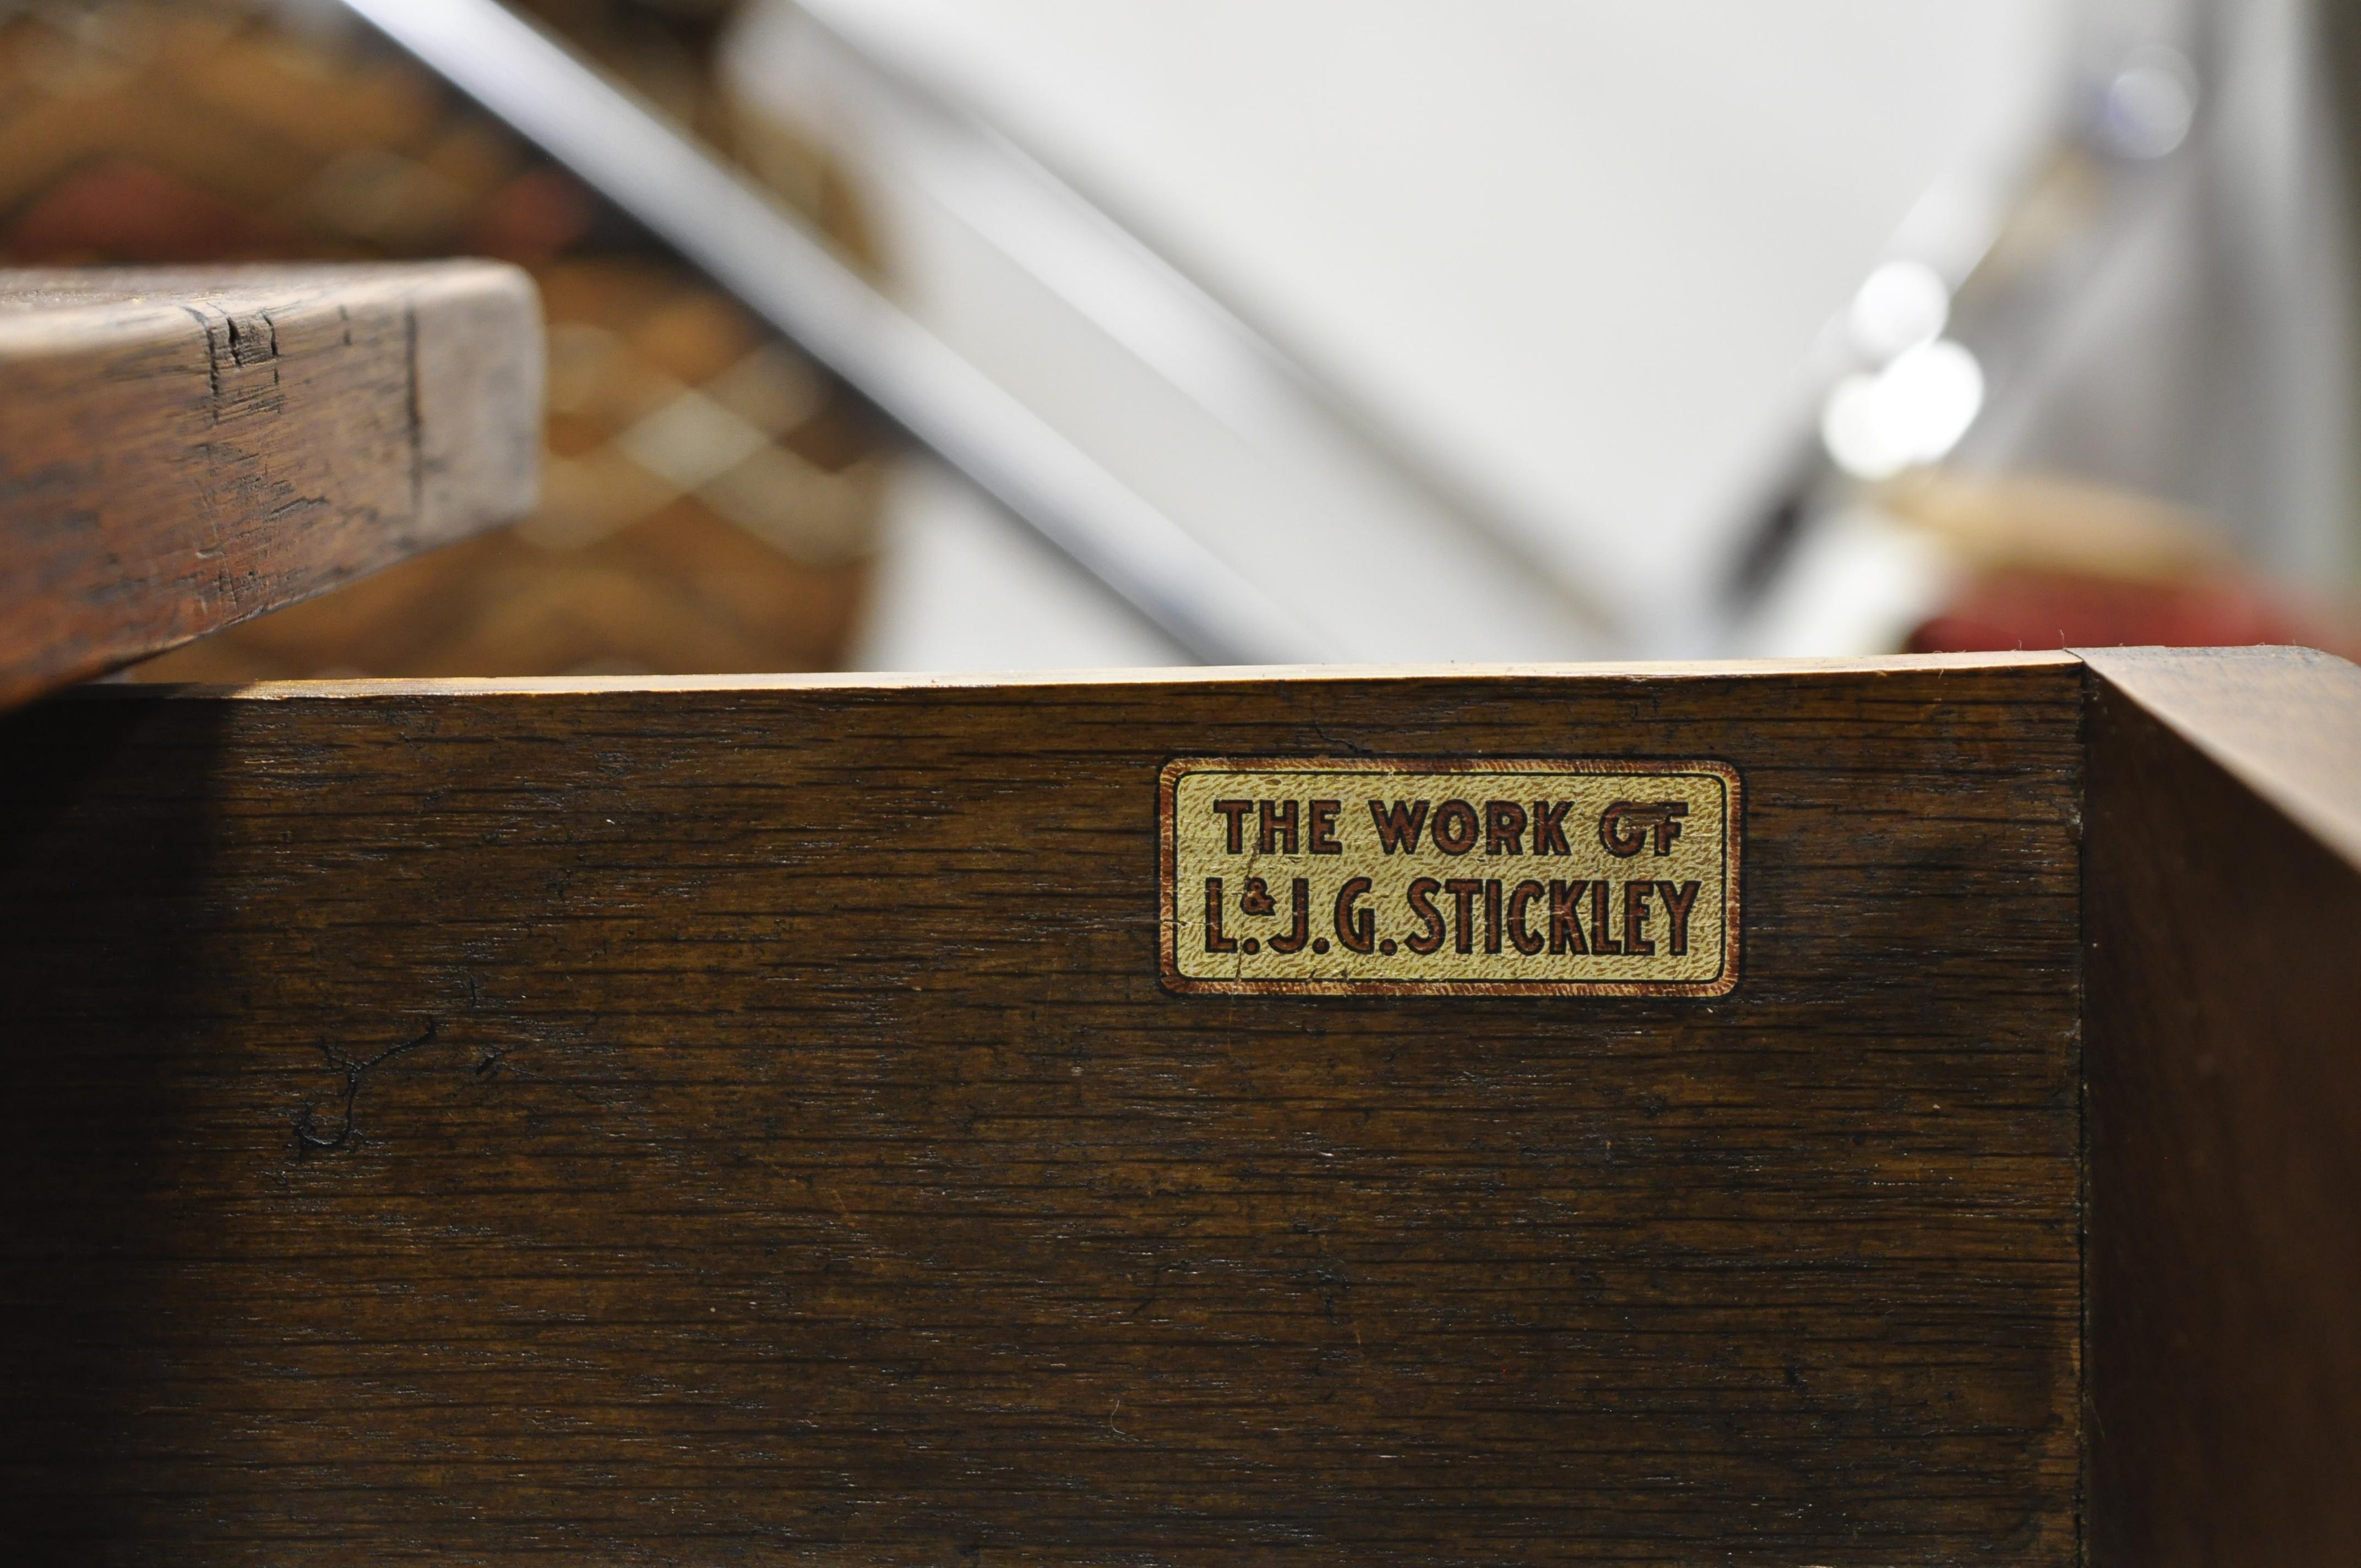 L & J.G. Stickley Library Table Desk #531 One Drawer Mission Oak Arts & Crafts 1